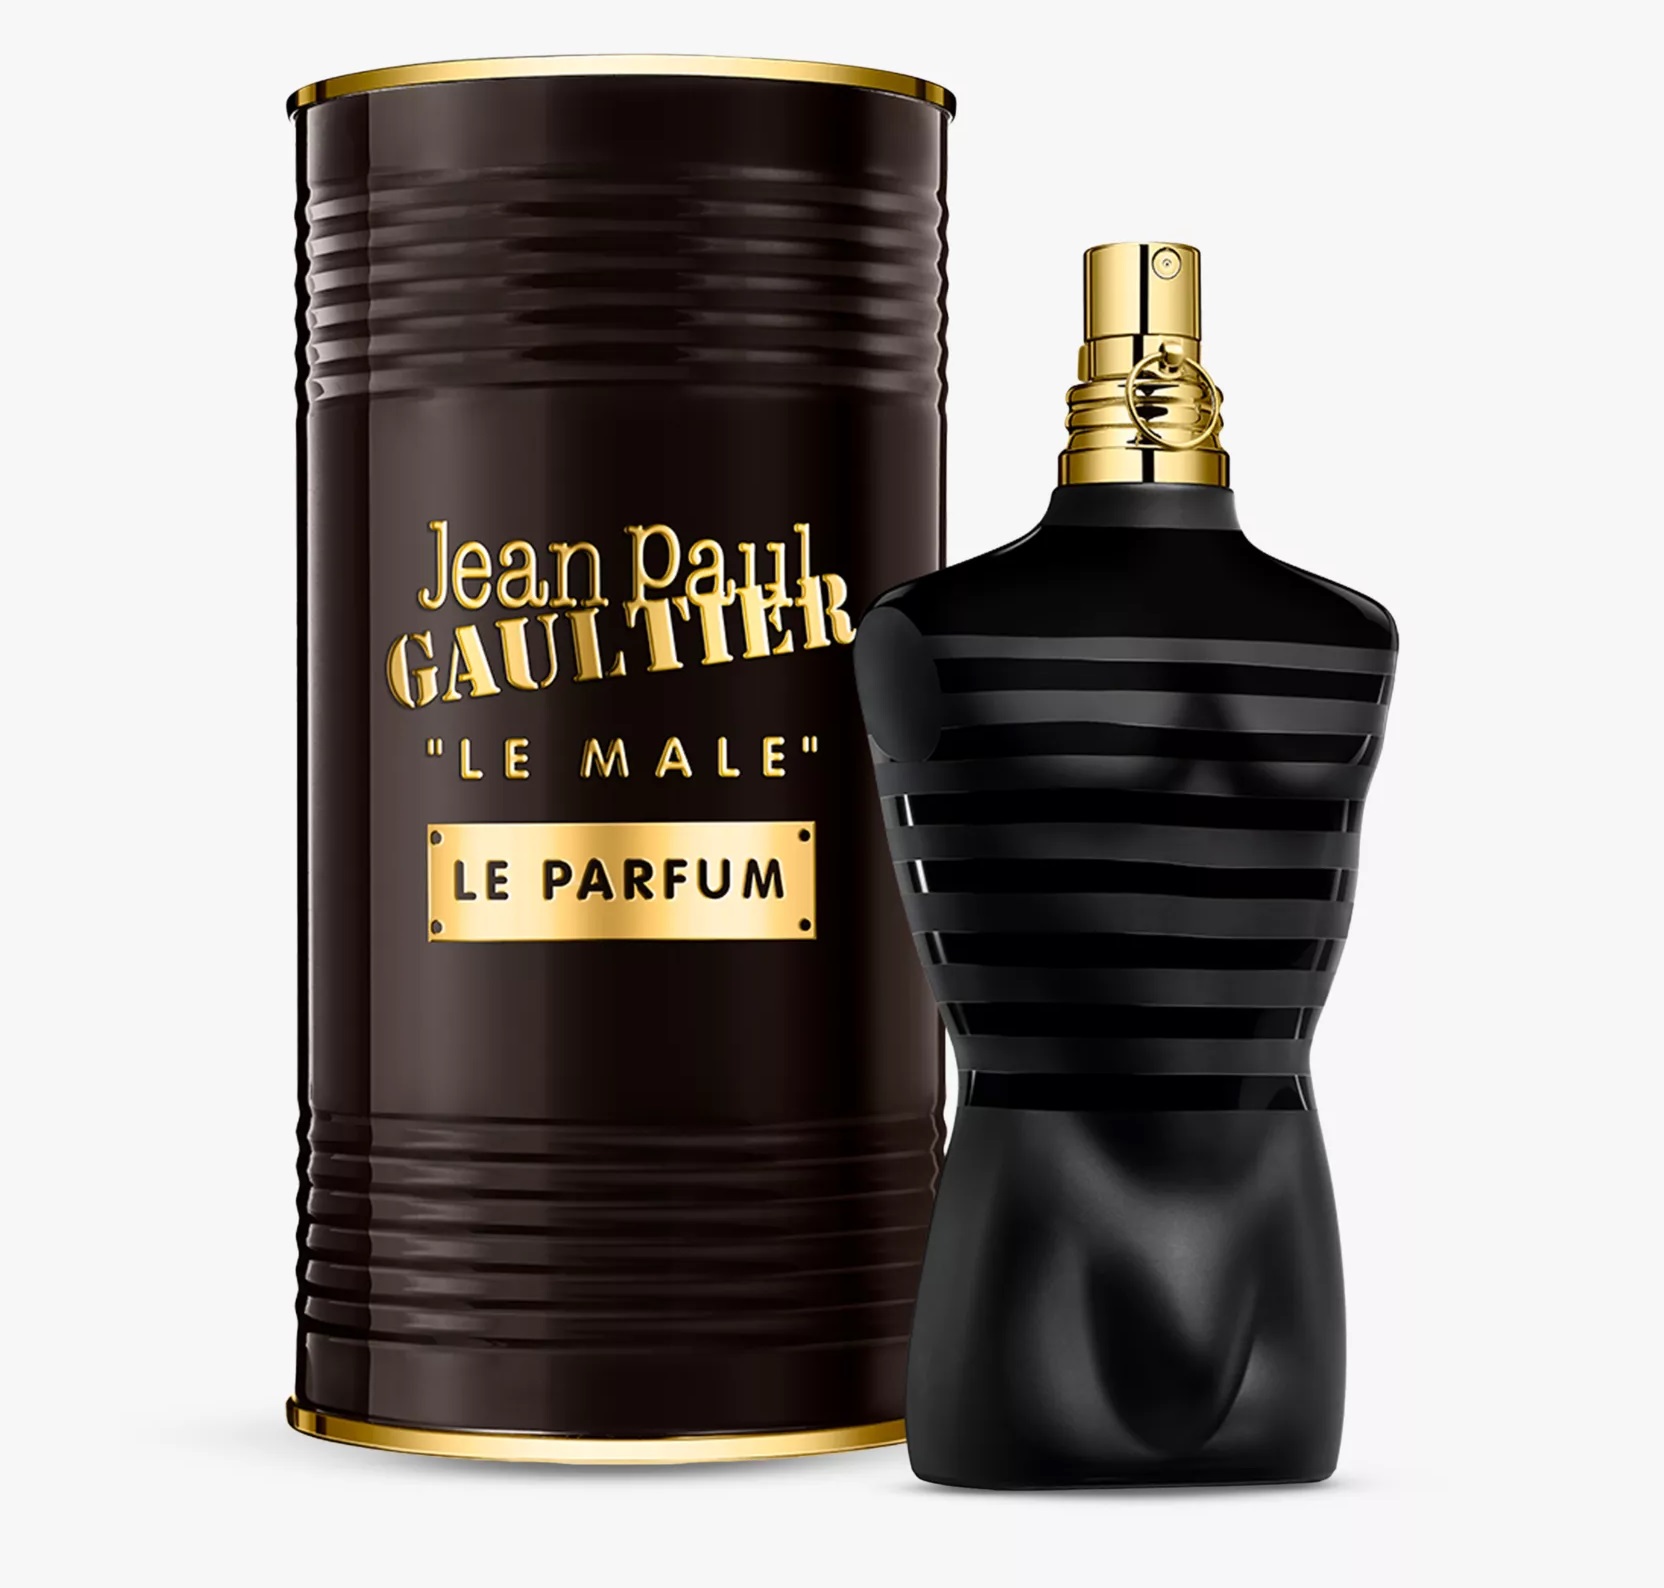 Le Male Le Parfum 75 mL